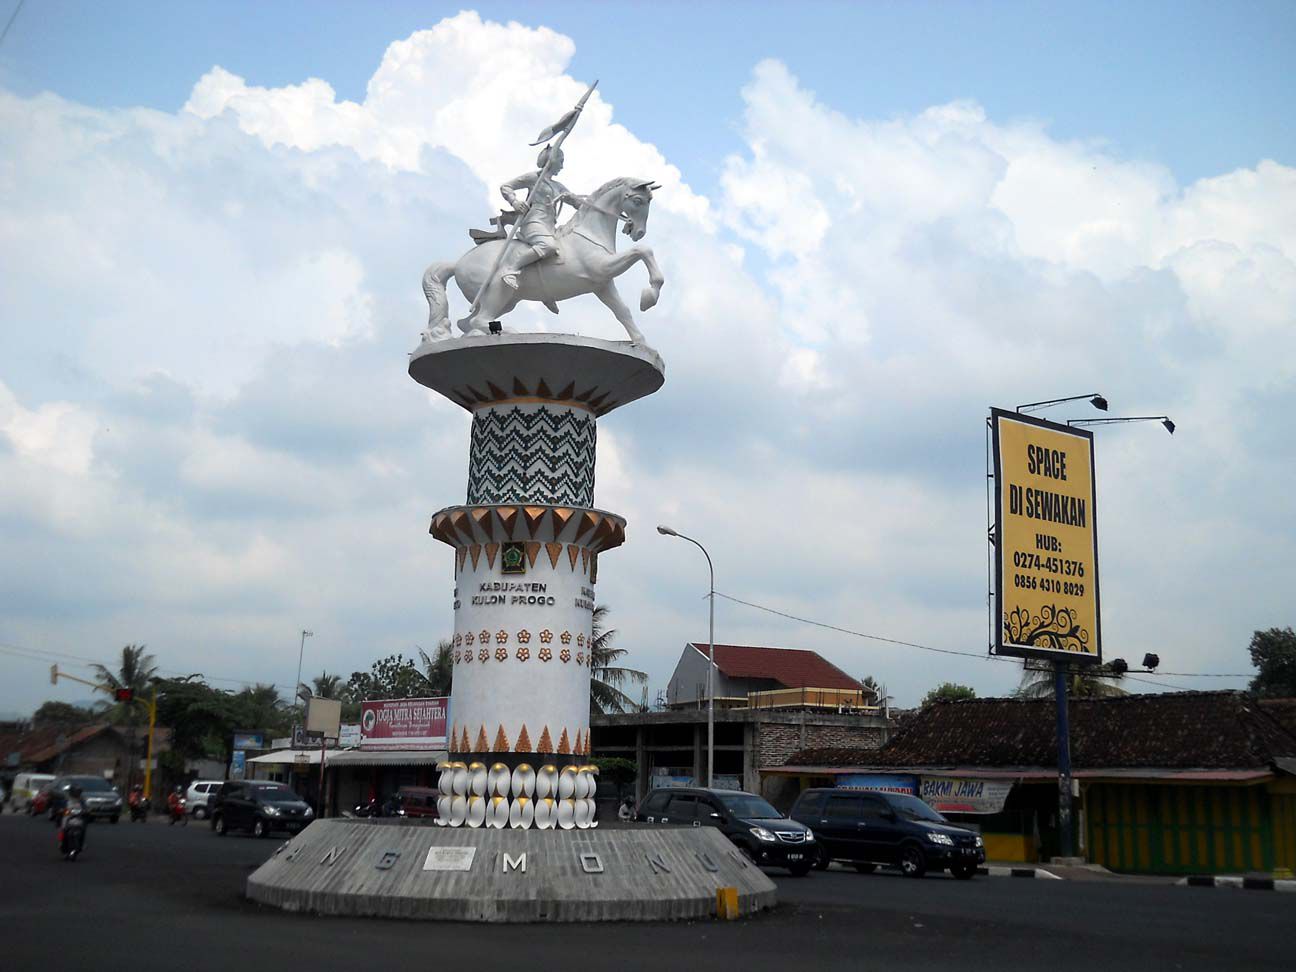 19 Tempat Wisata di Kulon Progo Terbaru & Terhits Dikunjungi